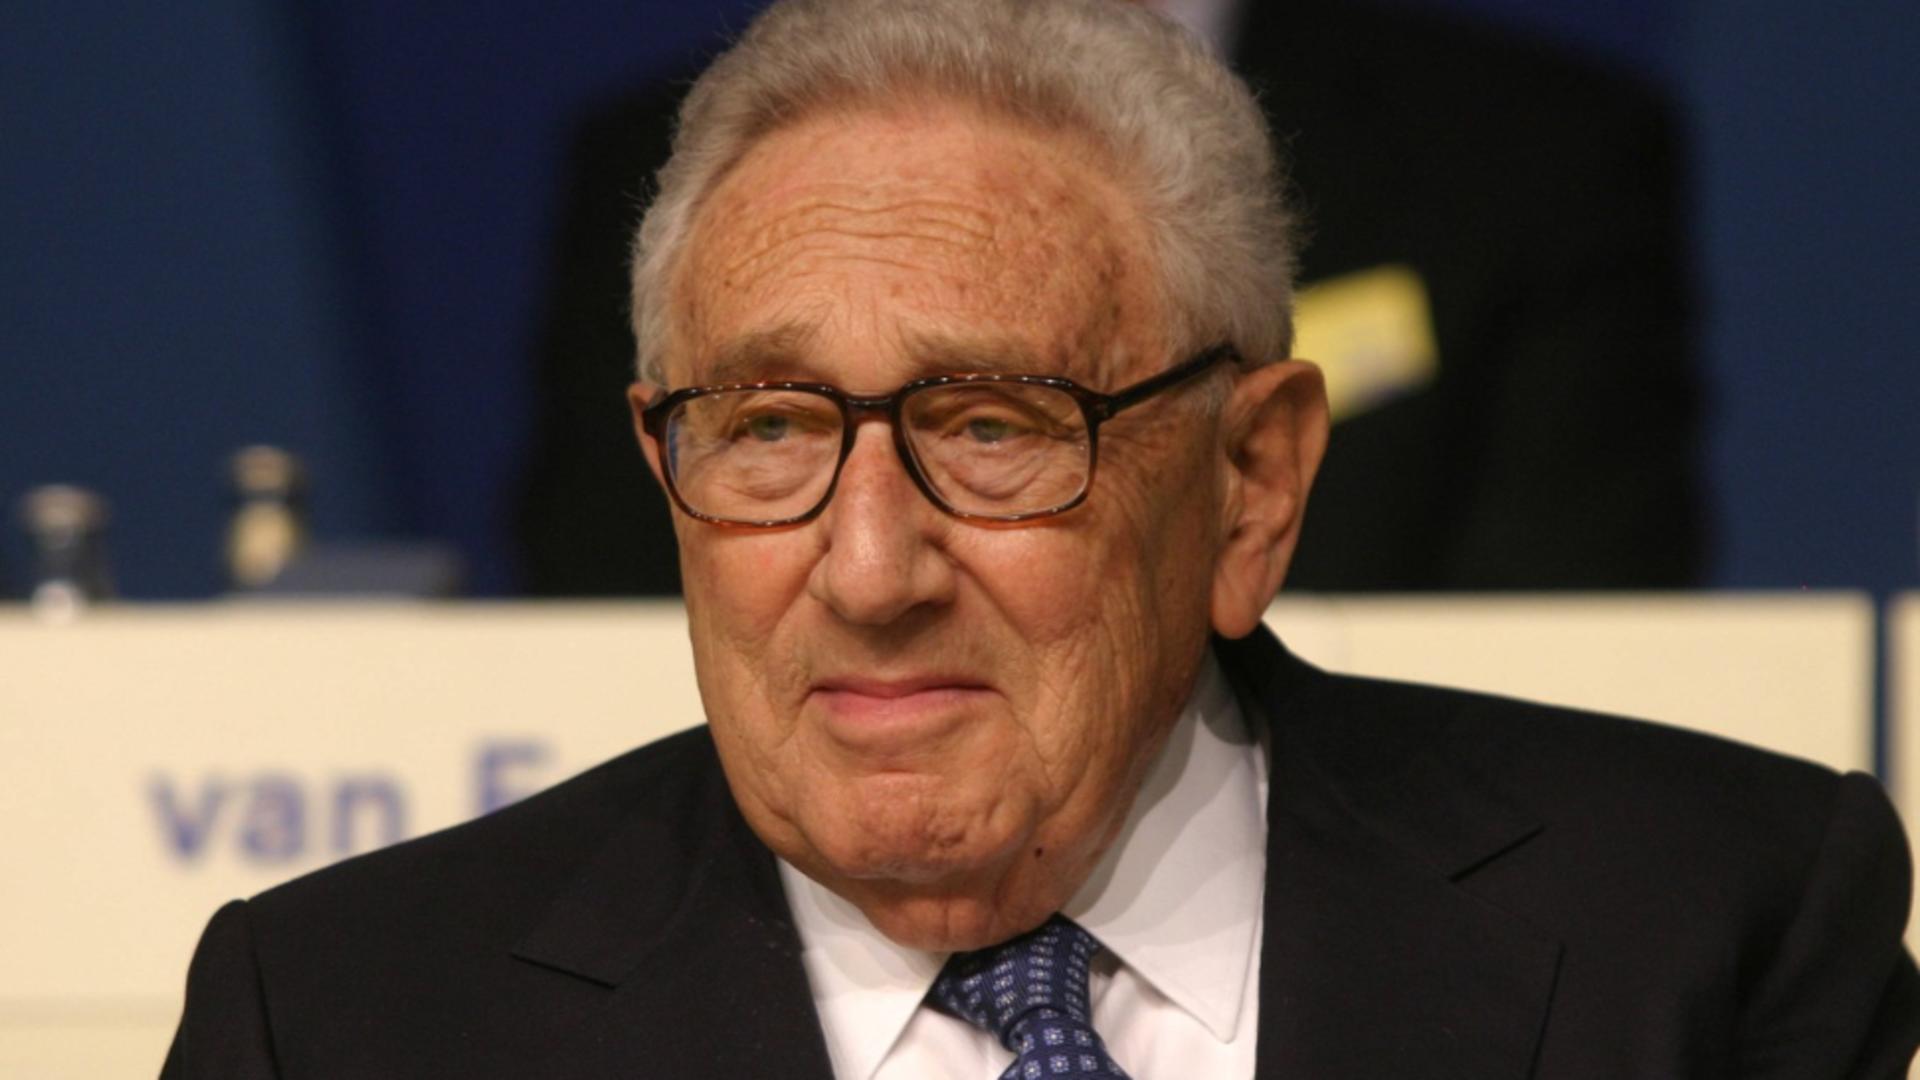 Dieta incredibilă a lui Kissinger, care l-a ajutat să trăiască până la 100 de ani. Diplomatul nu era vegan și nici nu făcea sport